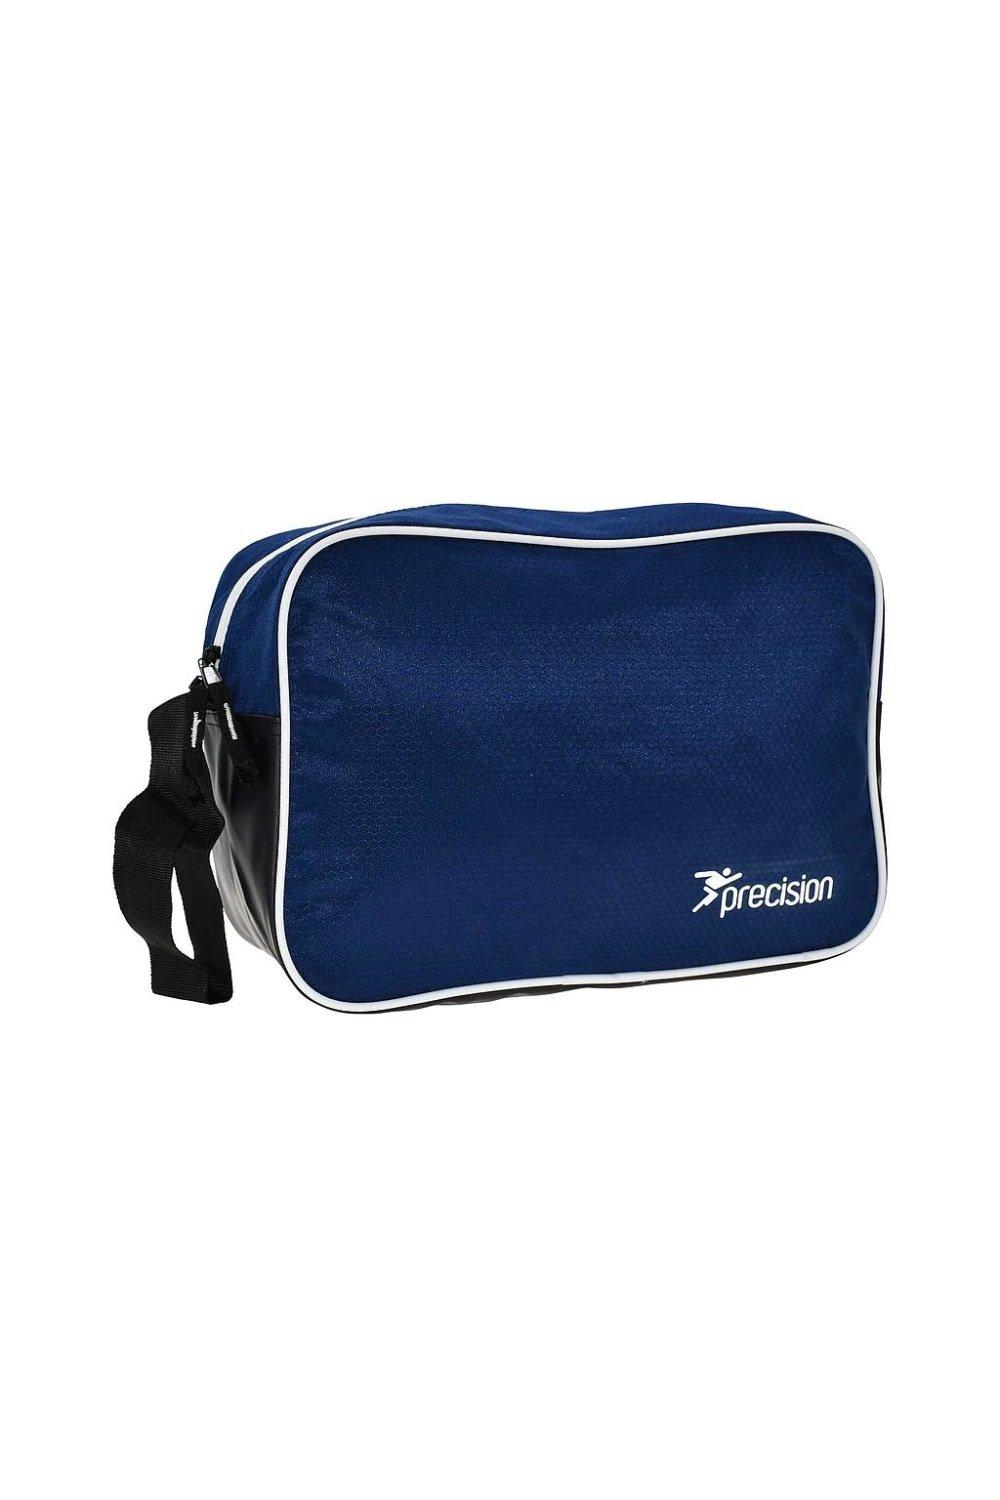 Перчаточная сумка Pro HX Precision, темно-синий ведро для краски jettools 11л пластик арт 11л